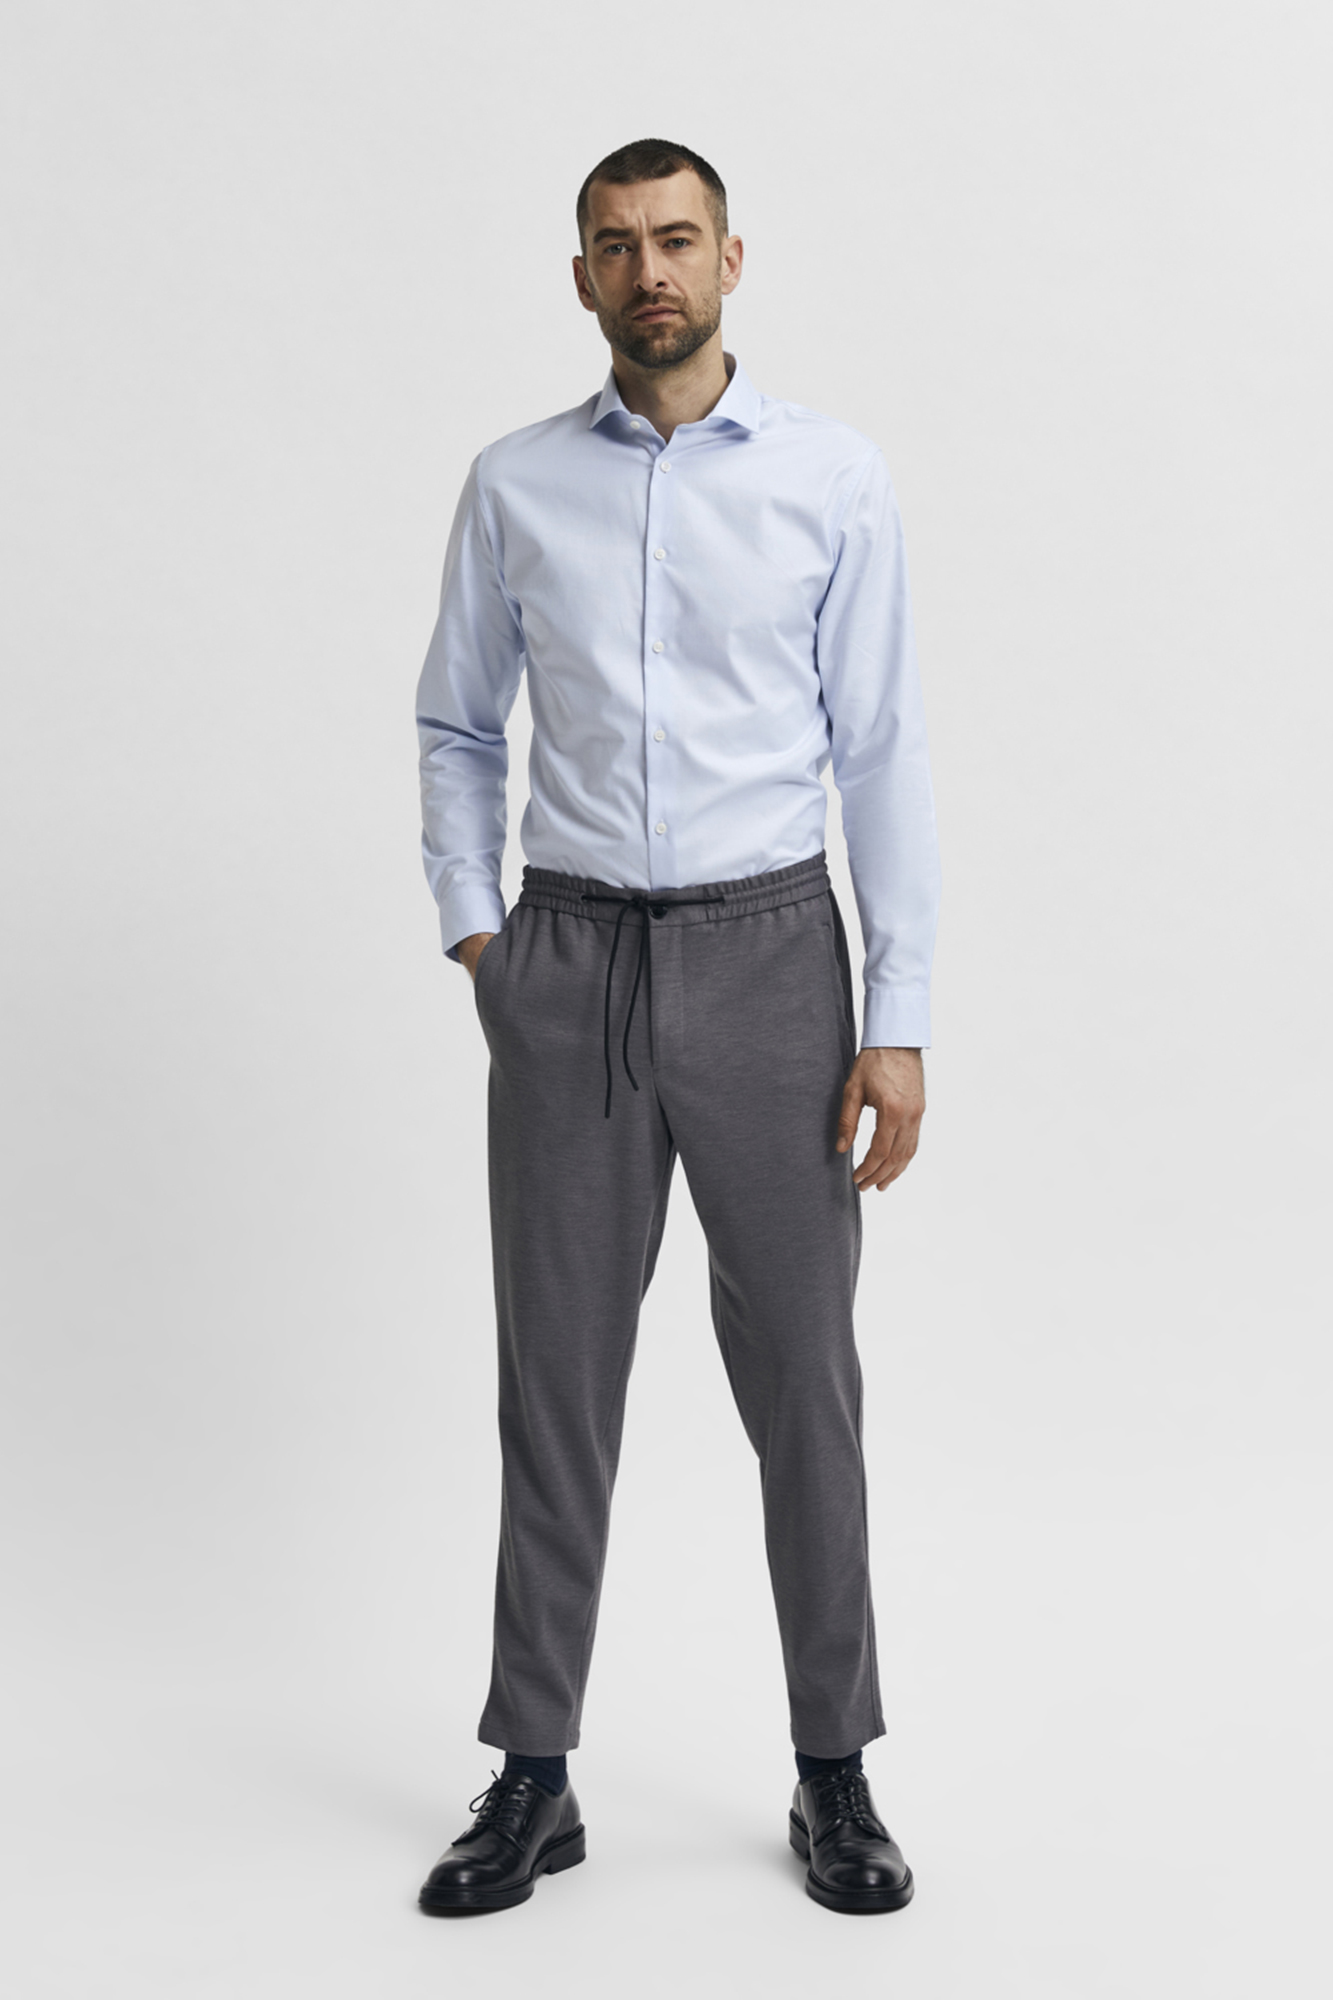 URBAN CLASSICS Camisola masculina oversize, camisola de manga comprida,  100% algodão, punhos nas mangas